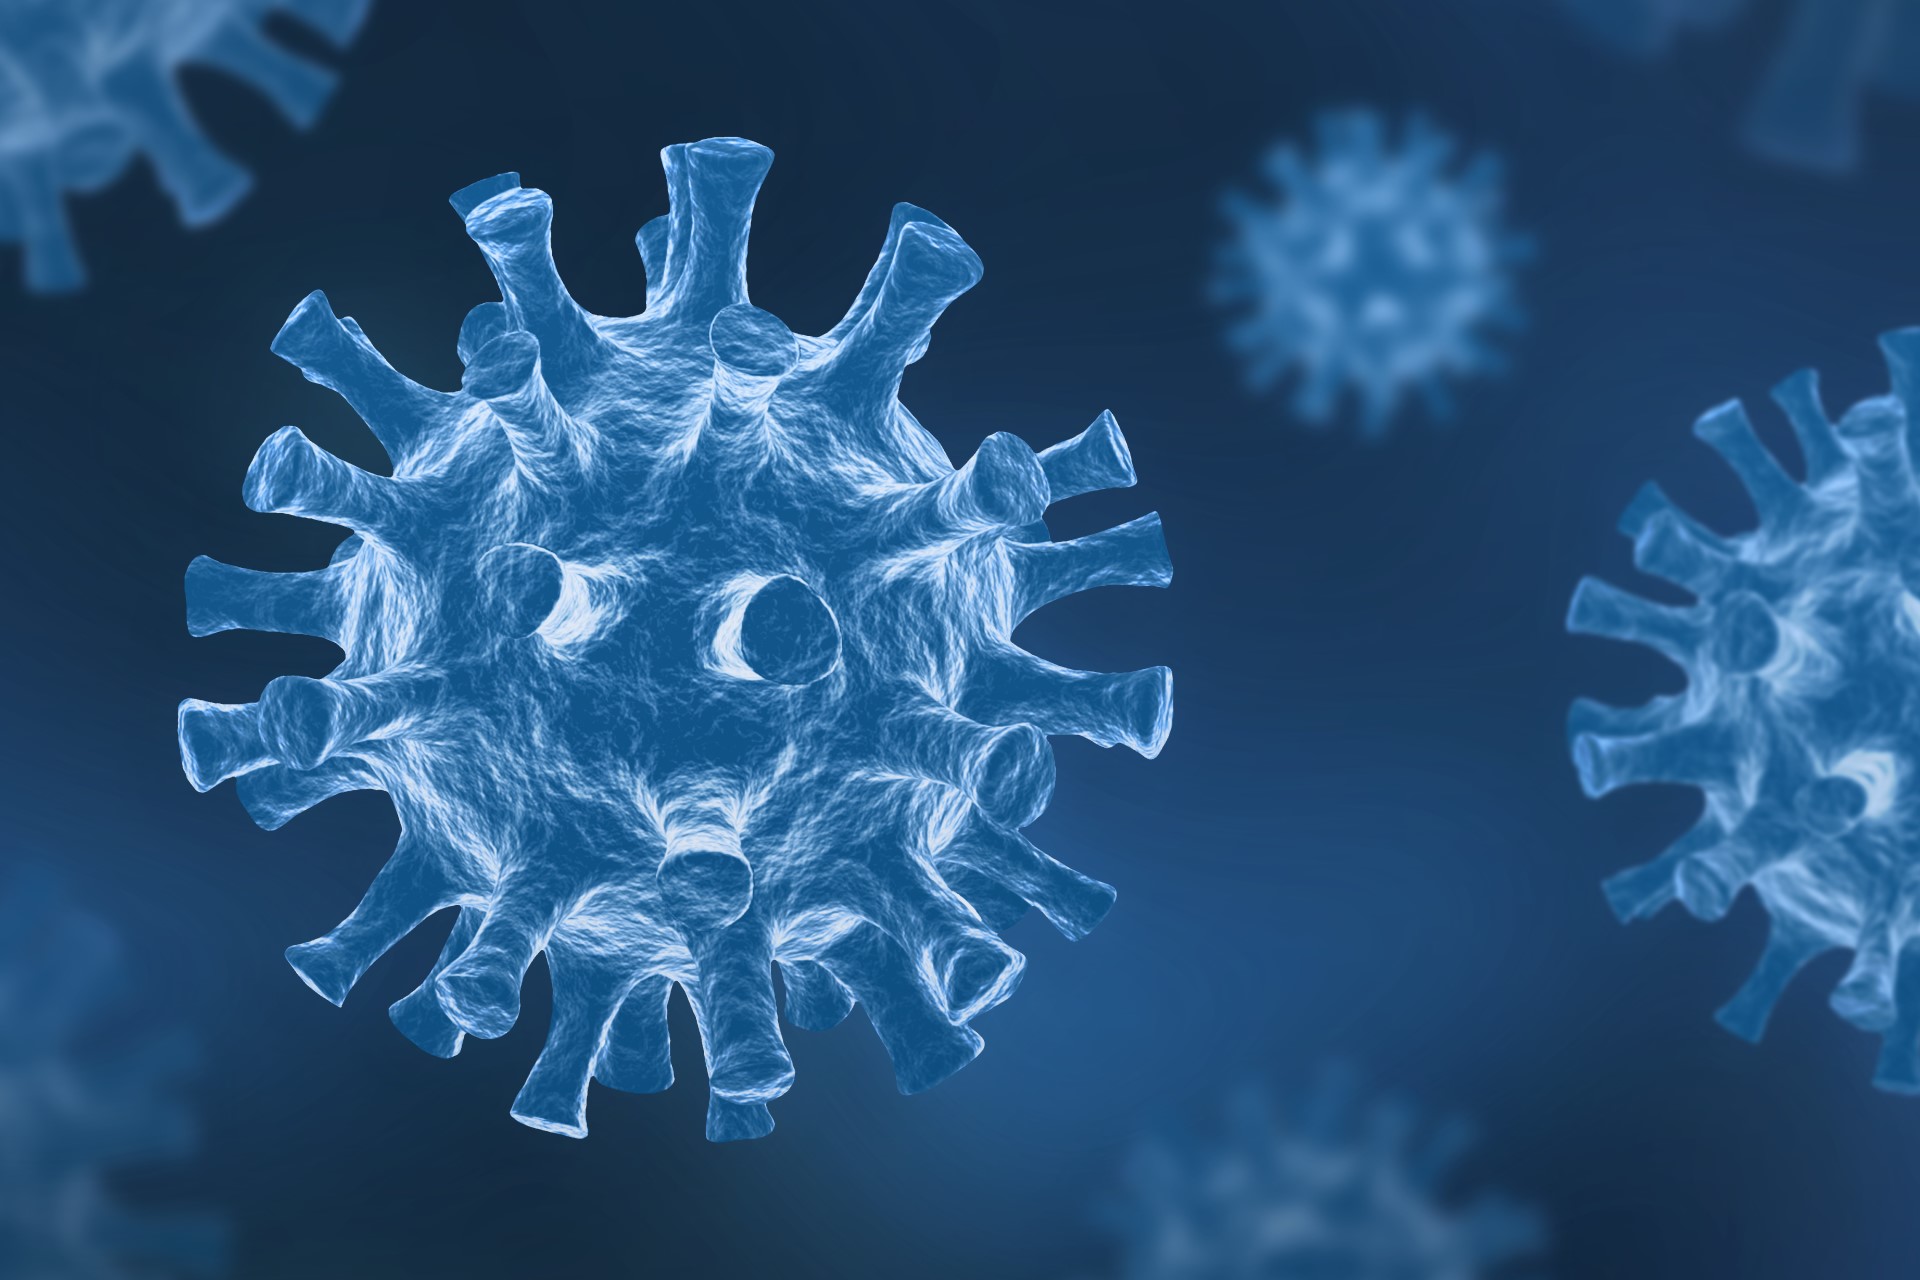 Coronavirus Update: ਕੋਰੋਨਾ ਦੇ ਖਤਰਿਆਂ ਦੇ ਵਿਚਕਾਰ ਅੰਤਰਰਾਸ਼ਟਰੀ ਯਾਤਰੀਆਂ ਦੀ 24 ਦਸੰਬਰ ਤੋਂ ਏਅਰਪੋਰਟ ‘ਤੇ ਹੋਵੇਗੀ ਰੈਂਡਮ ਟੈਸਟਿੰਗ